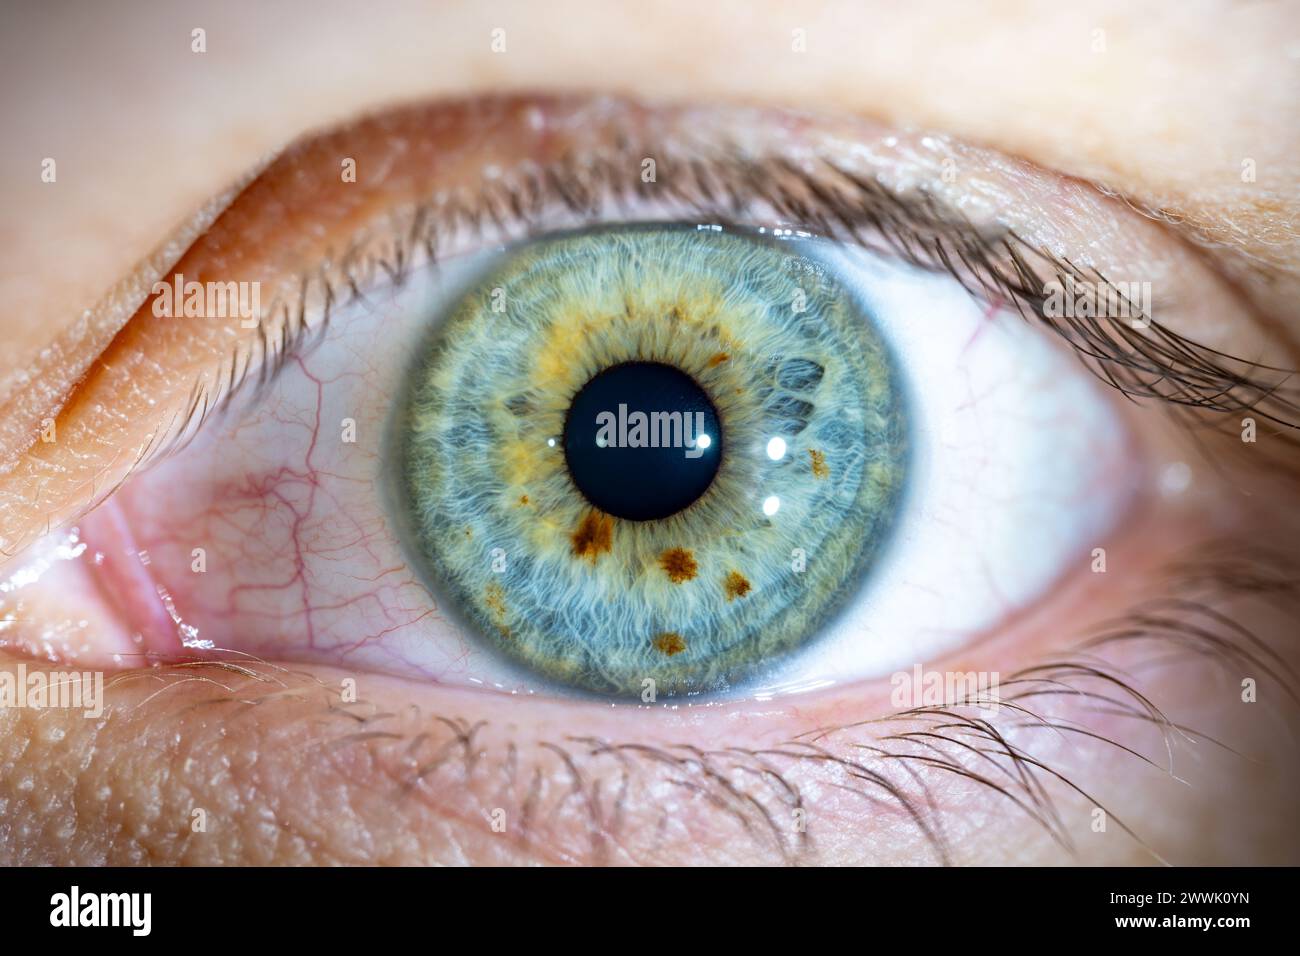 Beschreibung: Weibliches blau-grünes Auge mit braunen Pigmentflecken. Pupille Geöffnet. Nahaufnahme. Strukturelle Anatomie. Makrodetails Für Menschliche Blende. Stockfoto